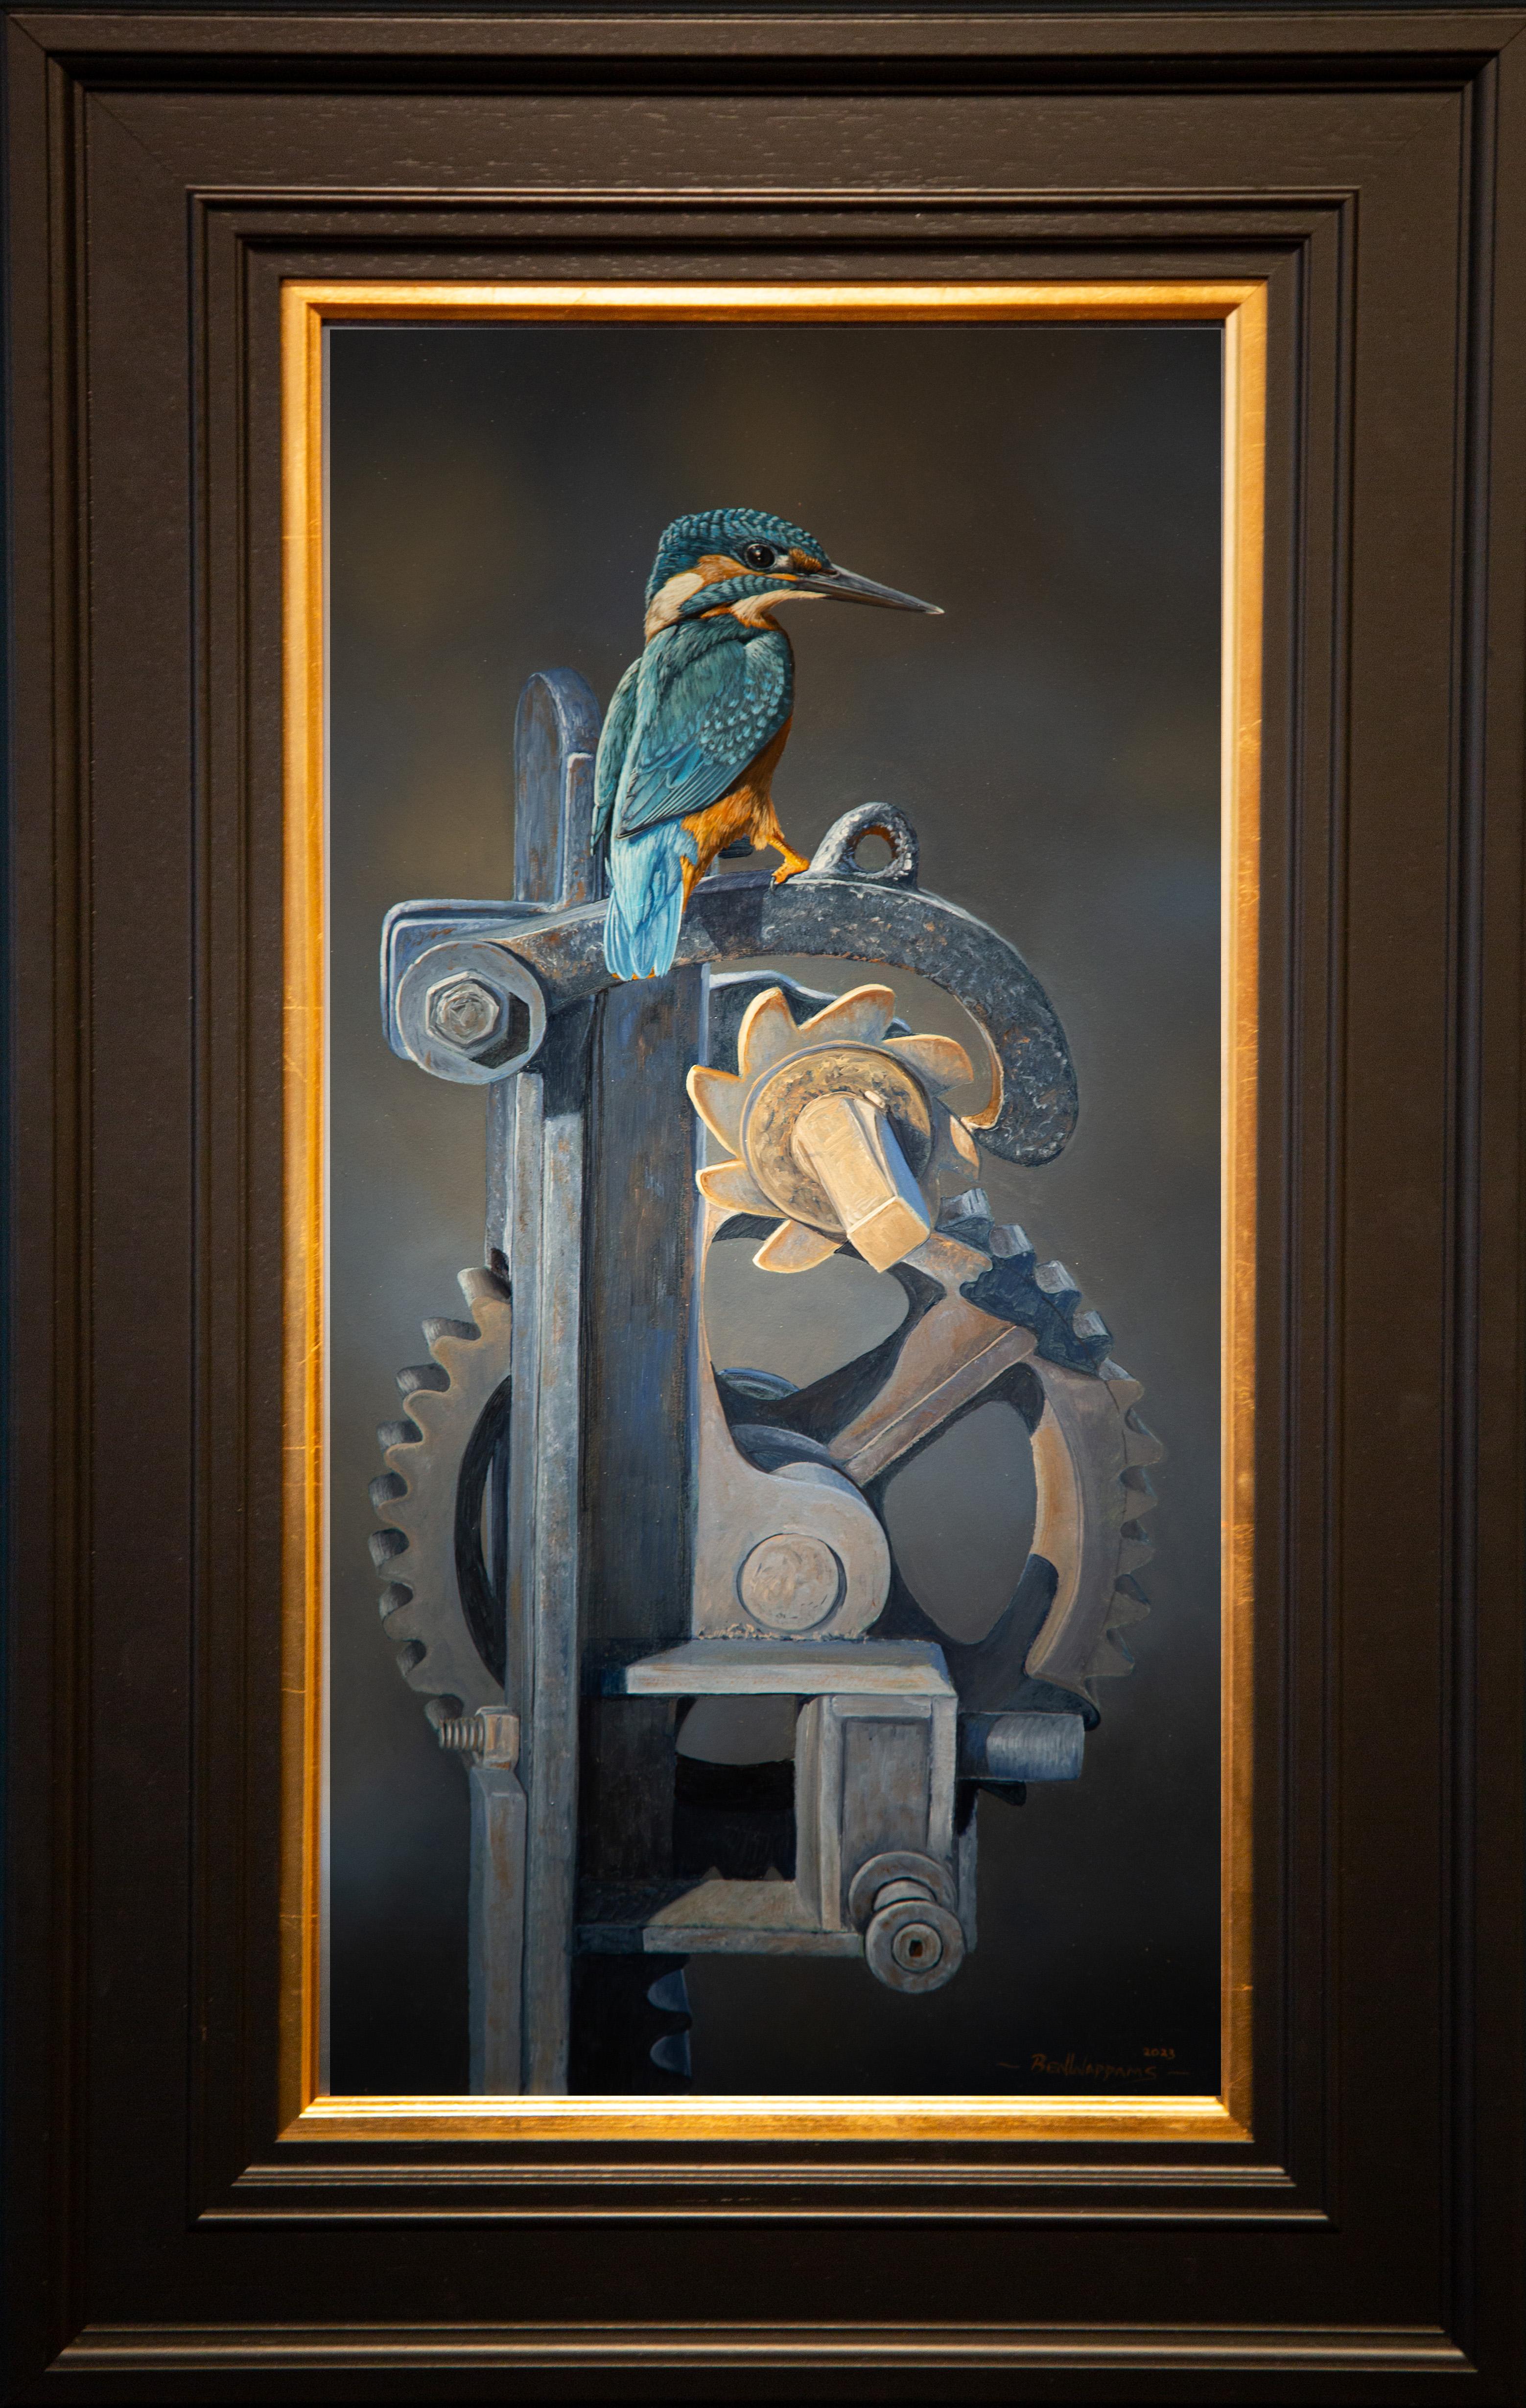 Kingfisher' Fotorealistisches Gemälde eines kleinen blauen Vogels auf einem Schleusentor, Vivid – Painting von Ben Waddams